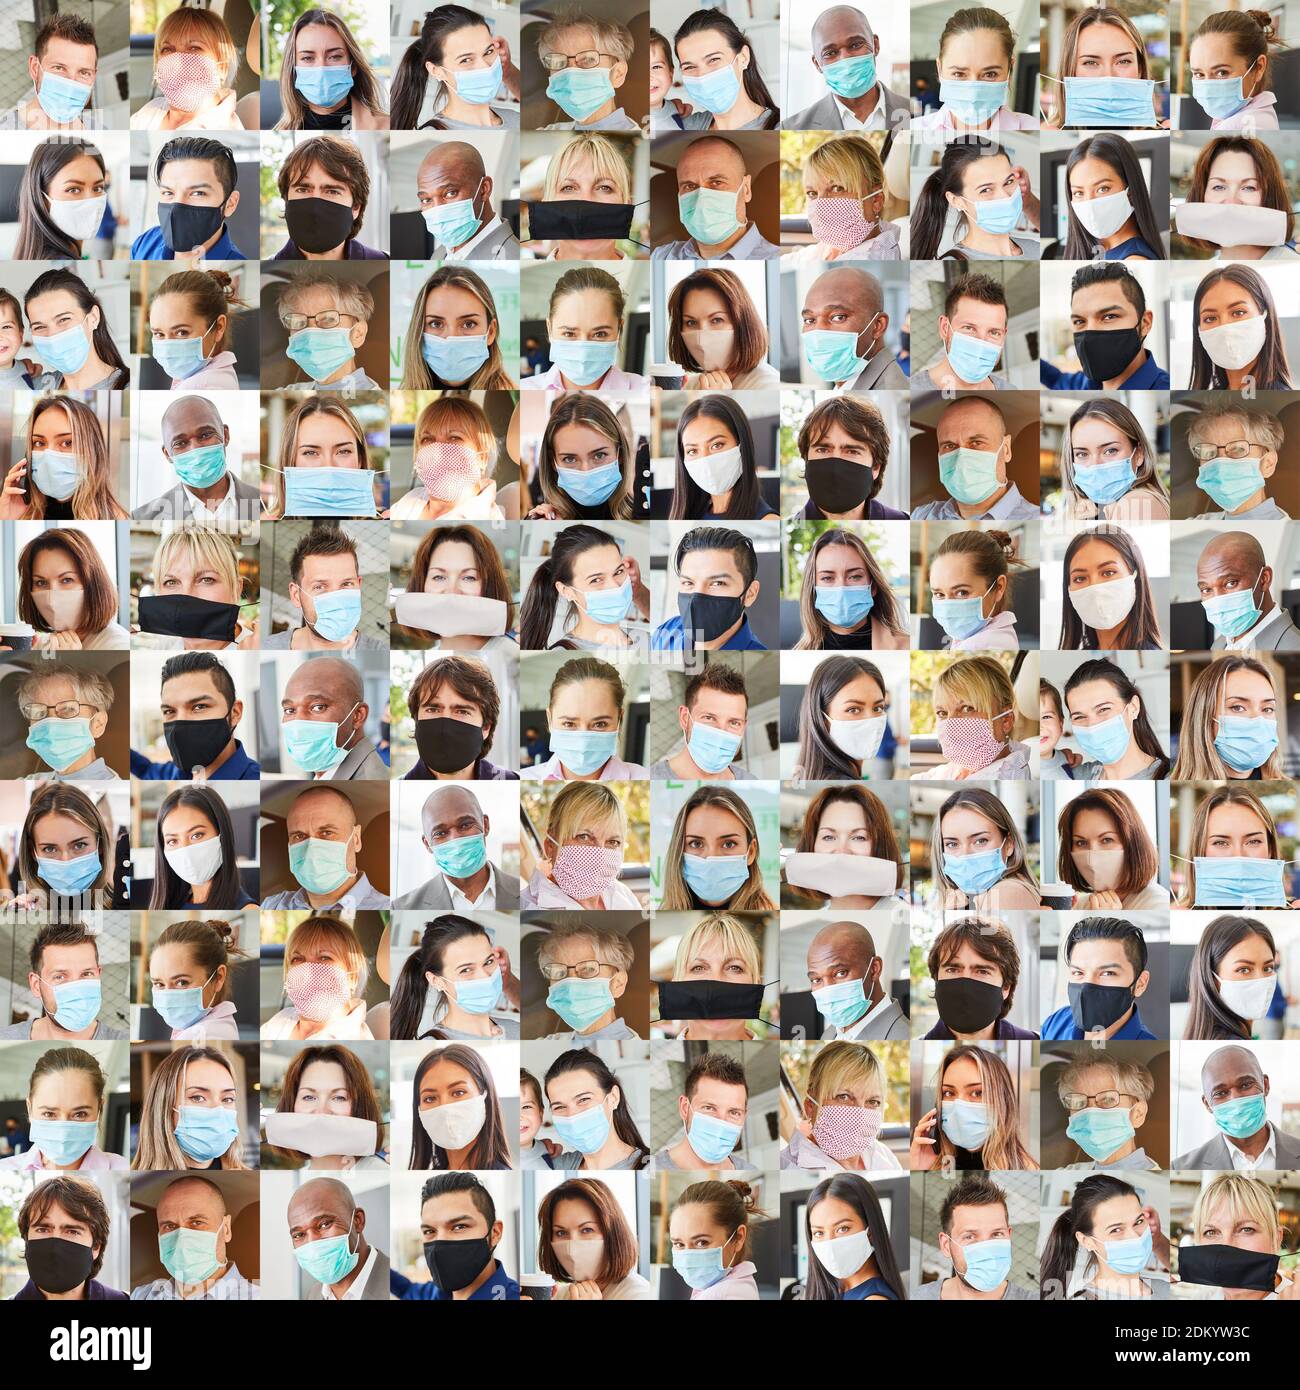 Retrato collage de personas con máscaras en la vida cotidiana Durante la pandemia de Covid-19 Foto de stock